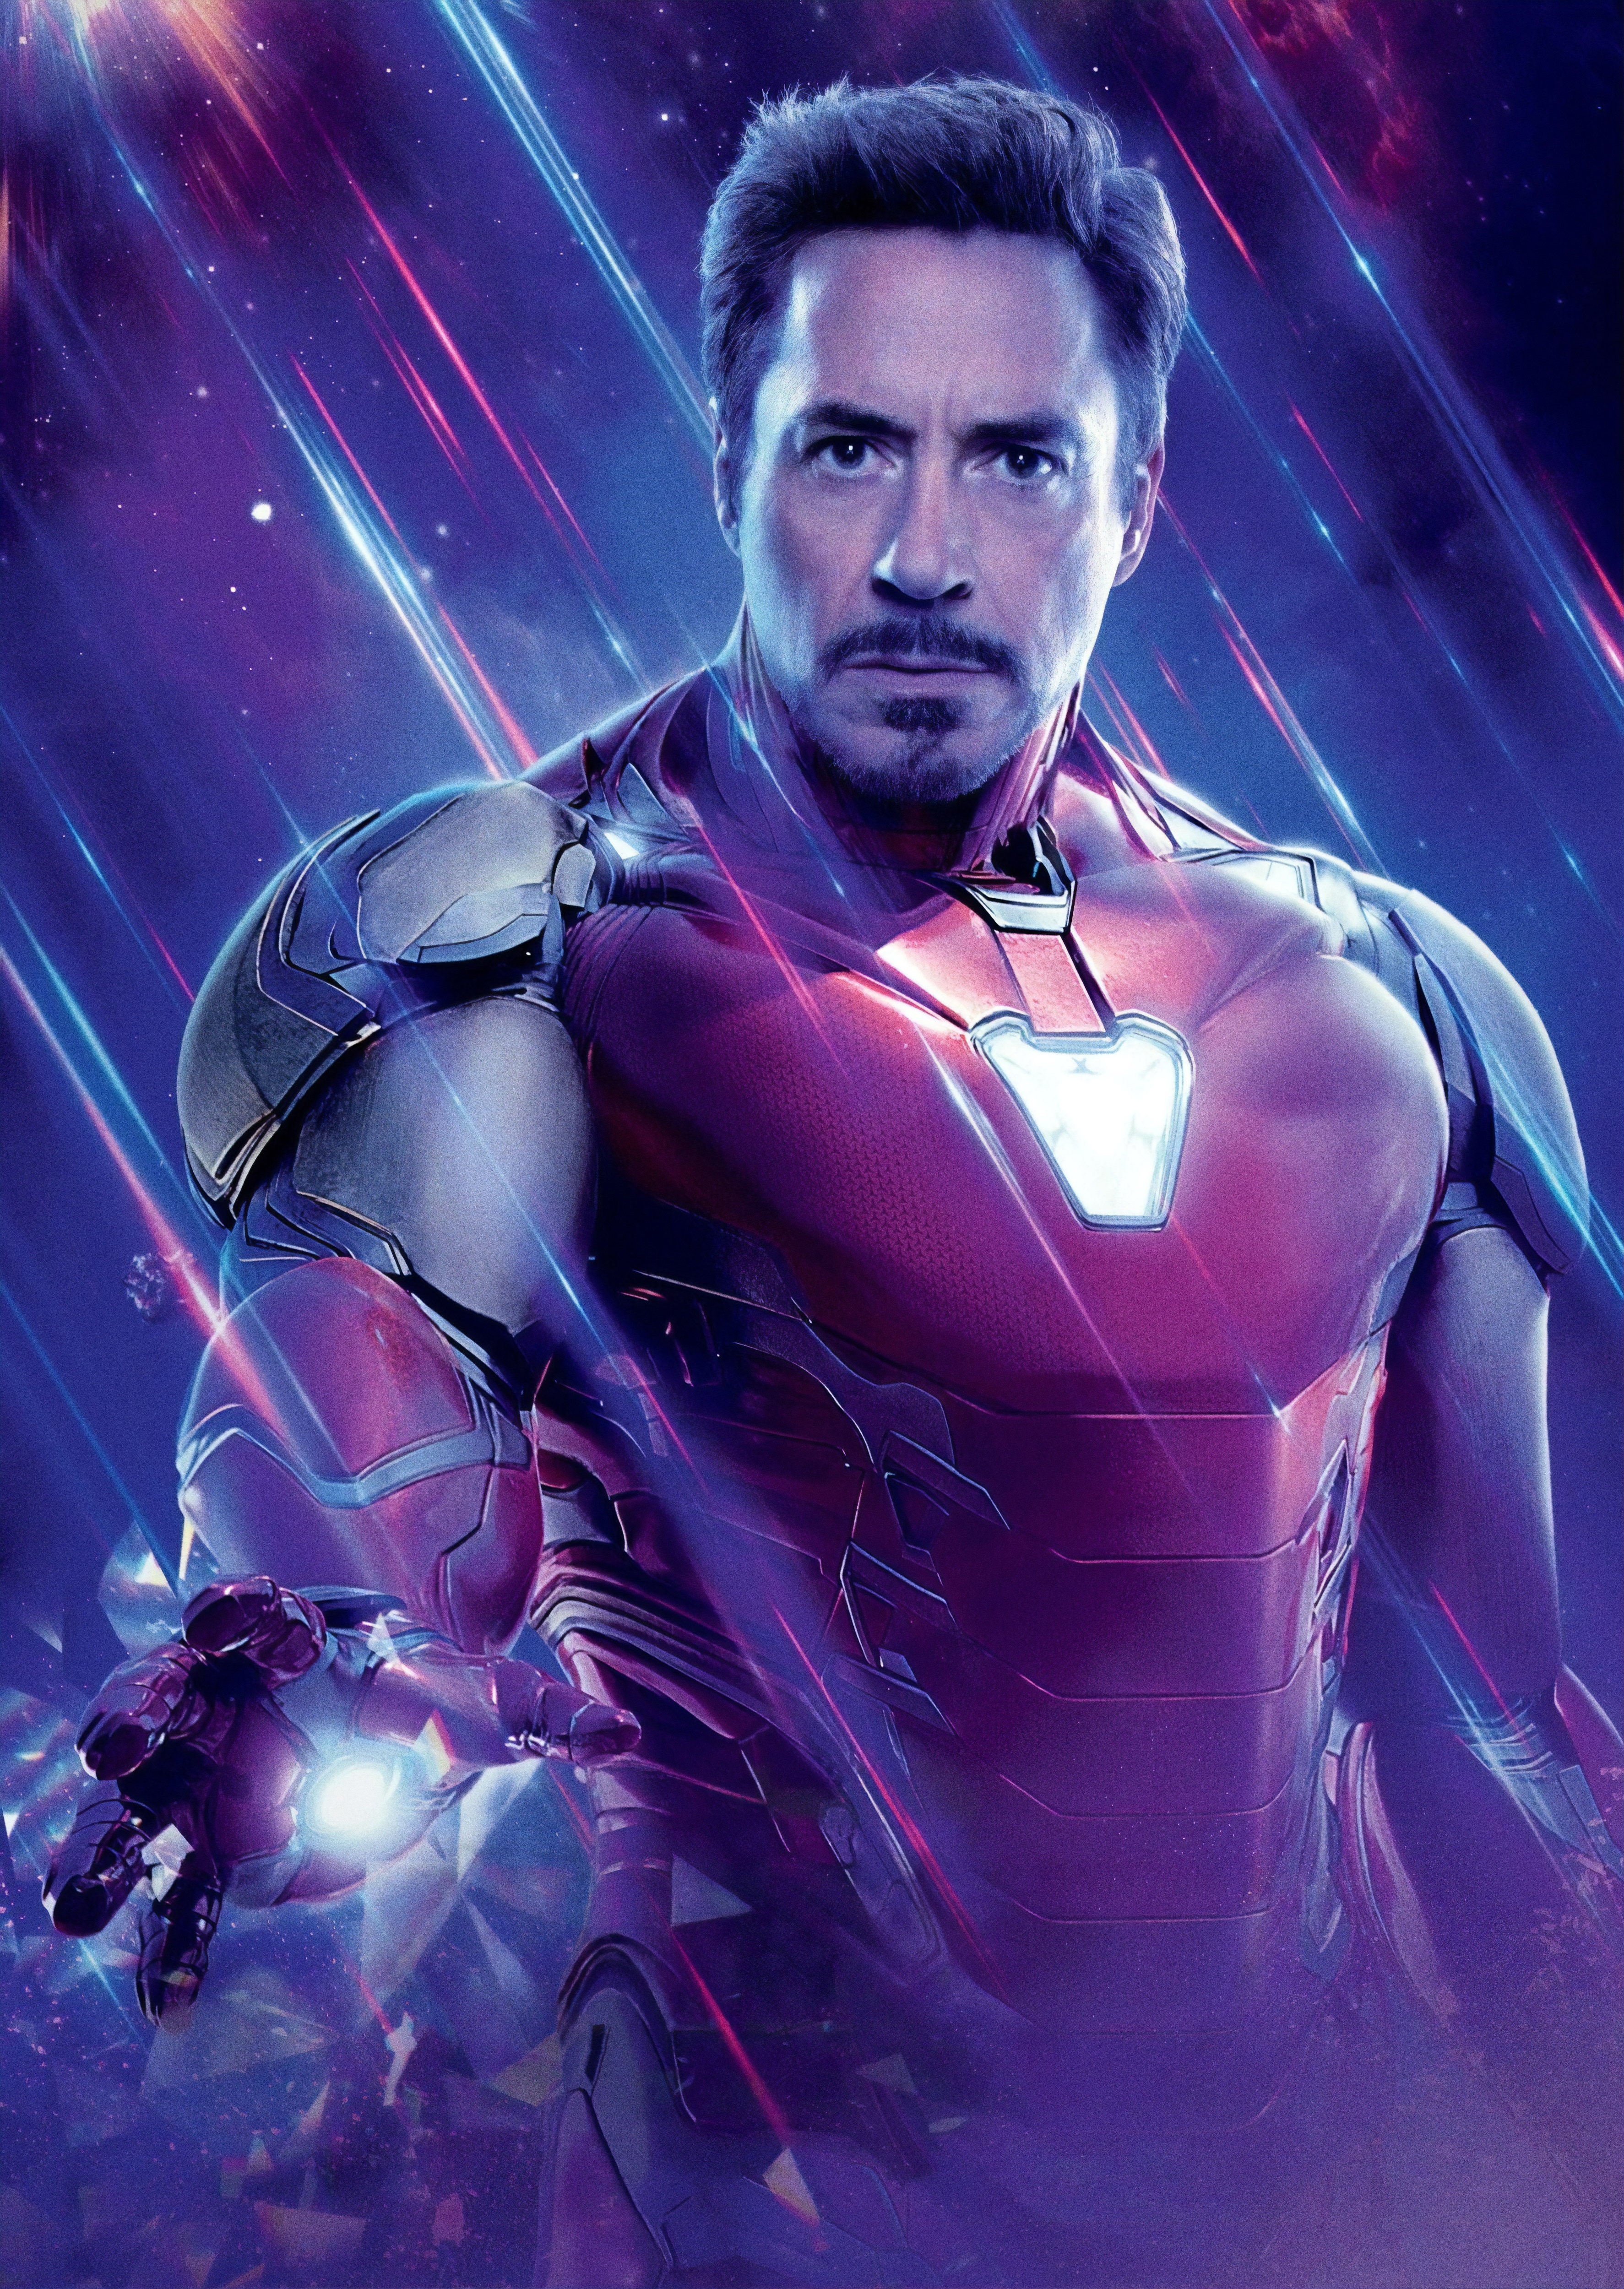 Iron Man (Vũ trụ Điện ảnh Marvel) – Với tên tuổi lừng danh và vô vàn khả năng phi thường, Iron Man là một trong những nhân vật phải xem của Vũ trụ Điện ảnh Marvel. Hãy cùng xem hình ảnh chân thật của Iron Man với bộ giáp đầy sức mạnh và quyền năng.